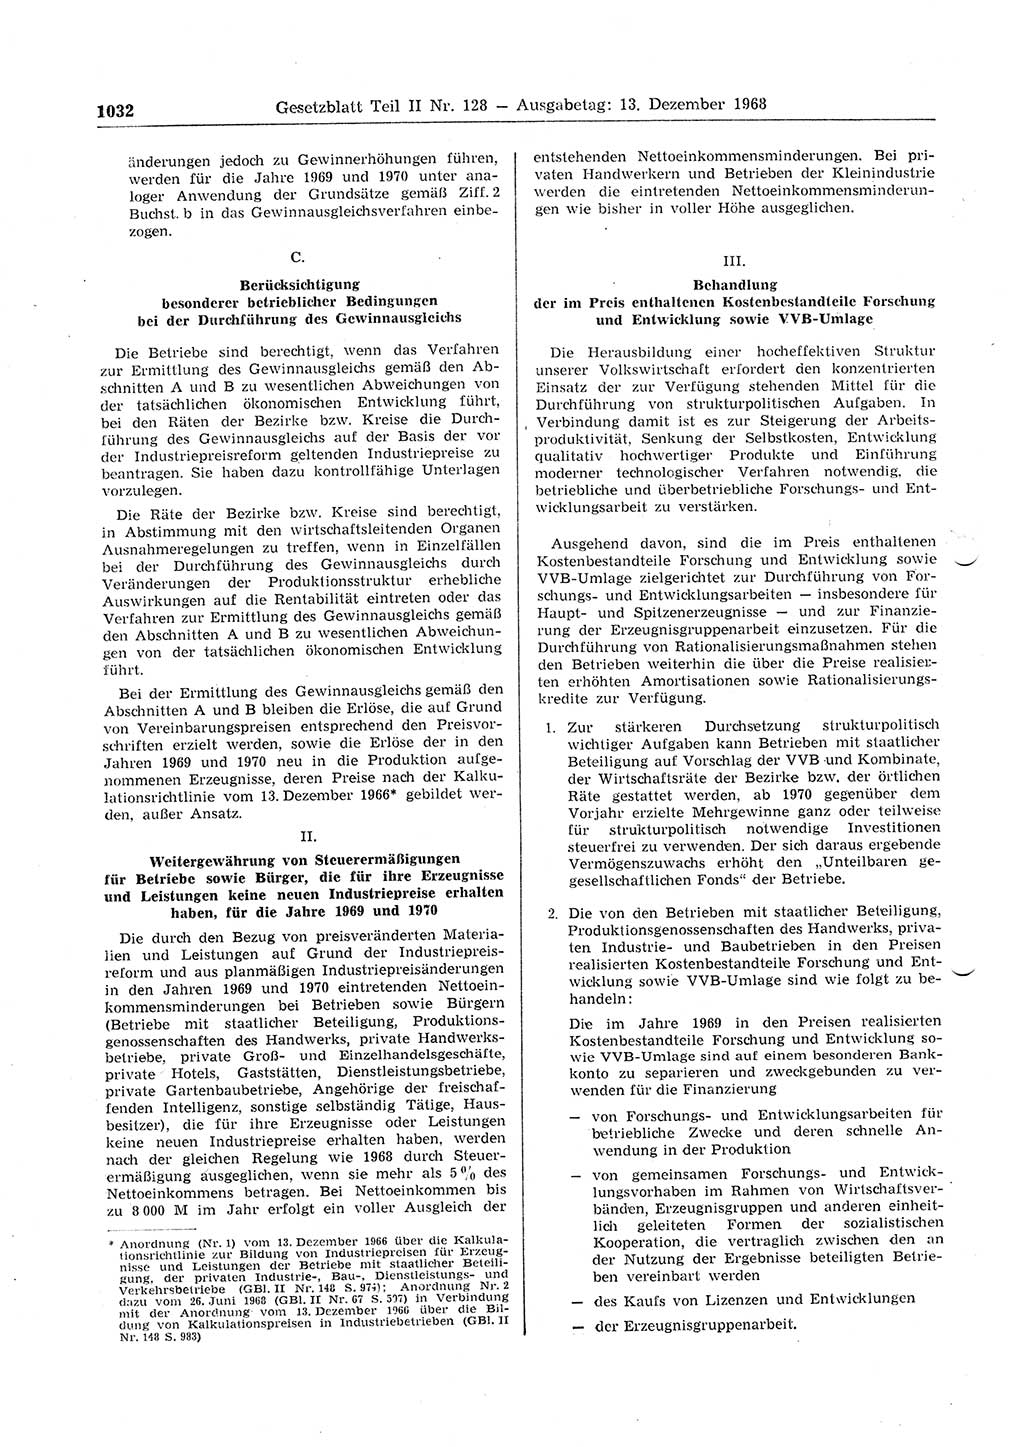 Gesetzblatt (GBl.) der Deutschen Demokratischen Republik (DDR) Teil ⅠⅠ 1968, Seite 1032 (GBl. DDR ⅠⅠ 1968, S. 1032)